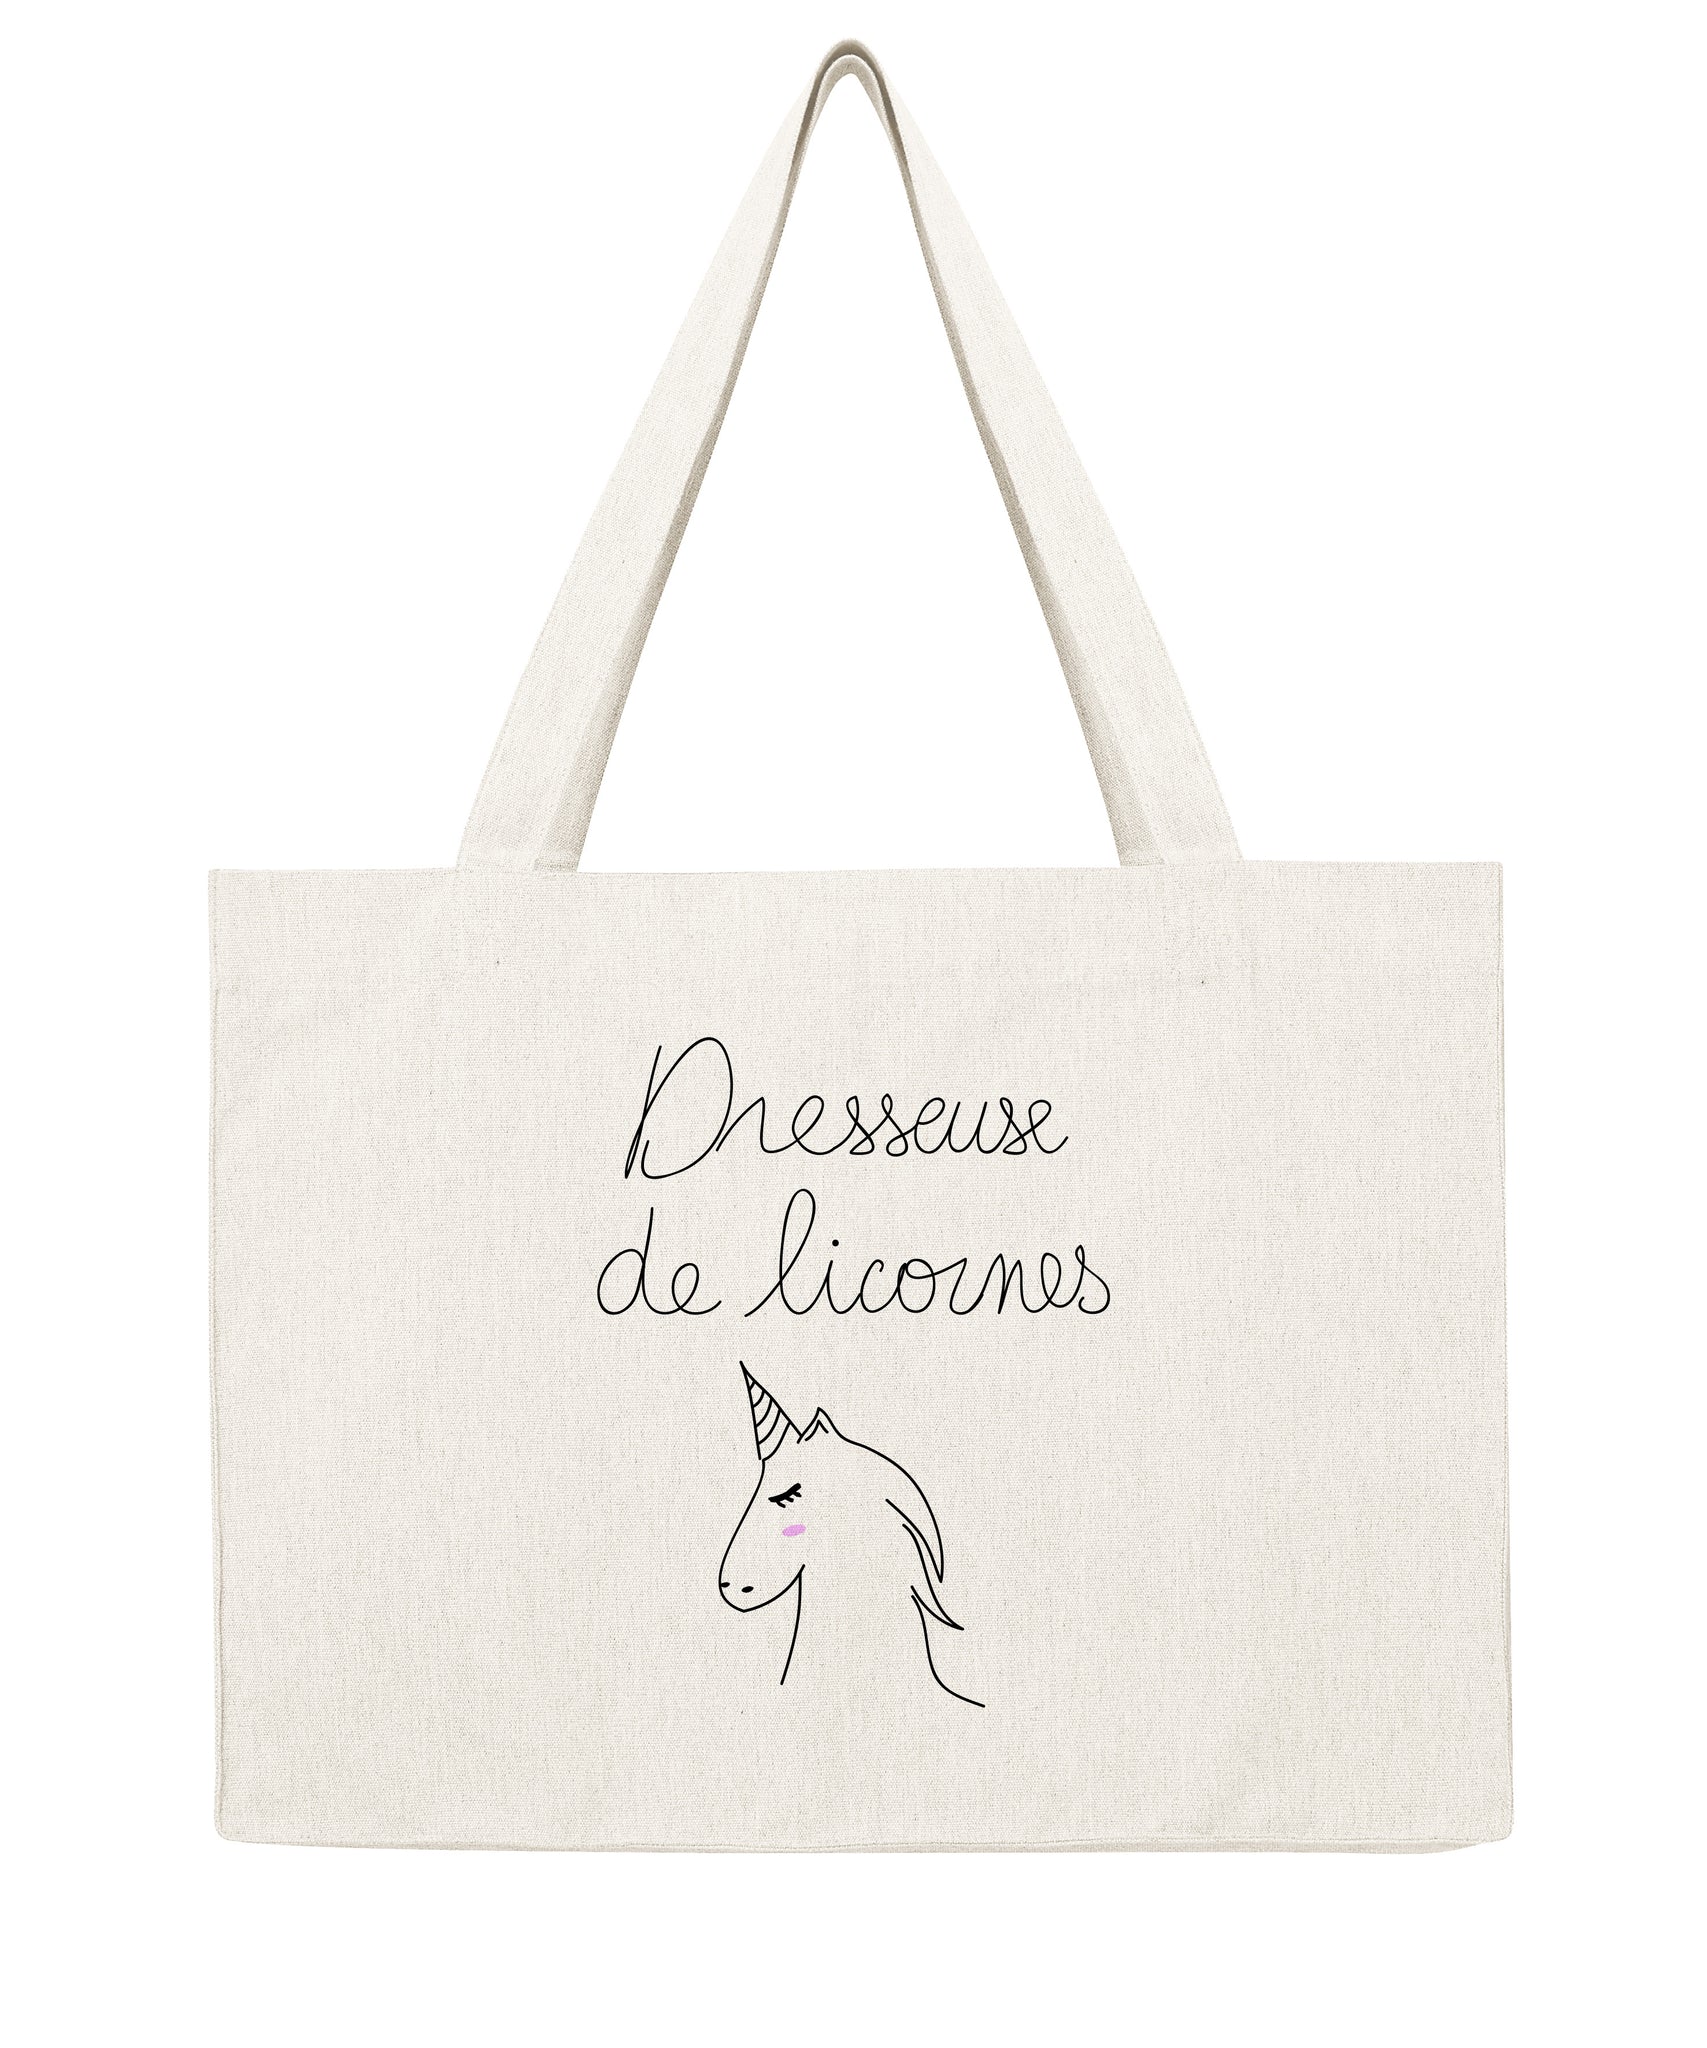 Dresseuse de licornes - Shopping bag-Sacs-Atelier Amelot